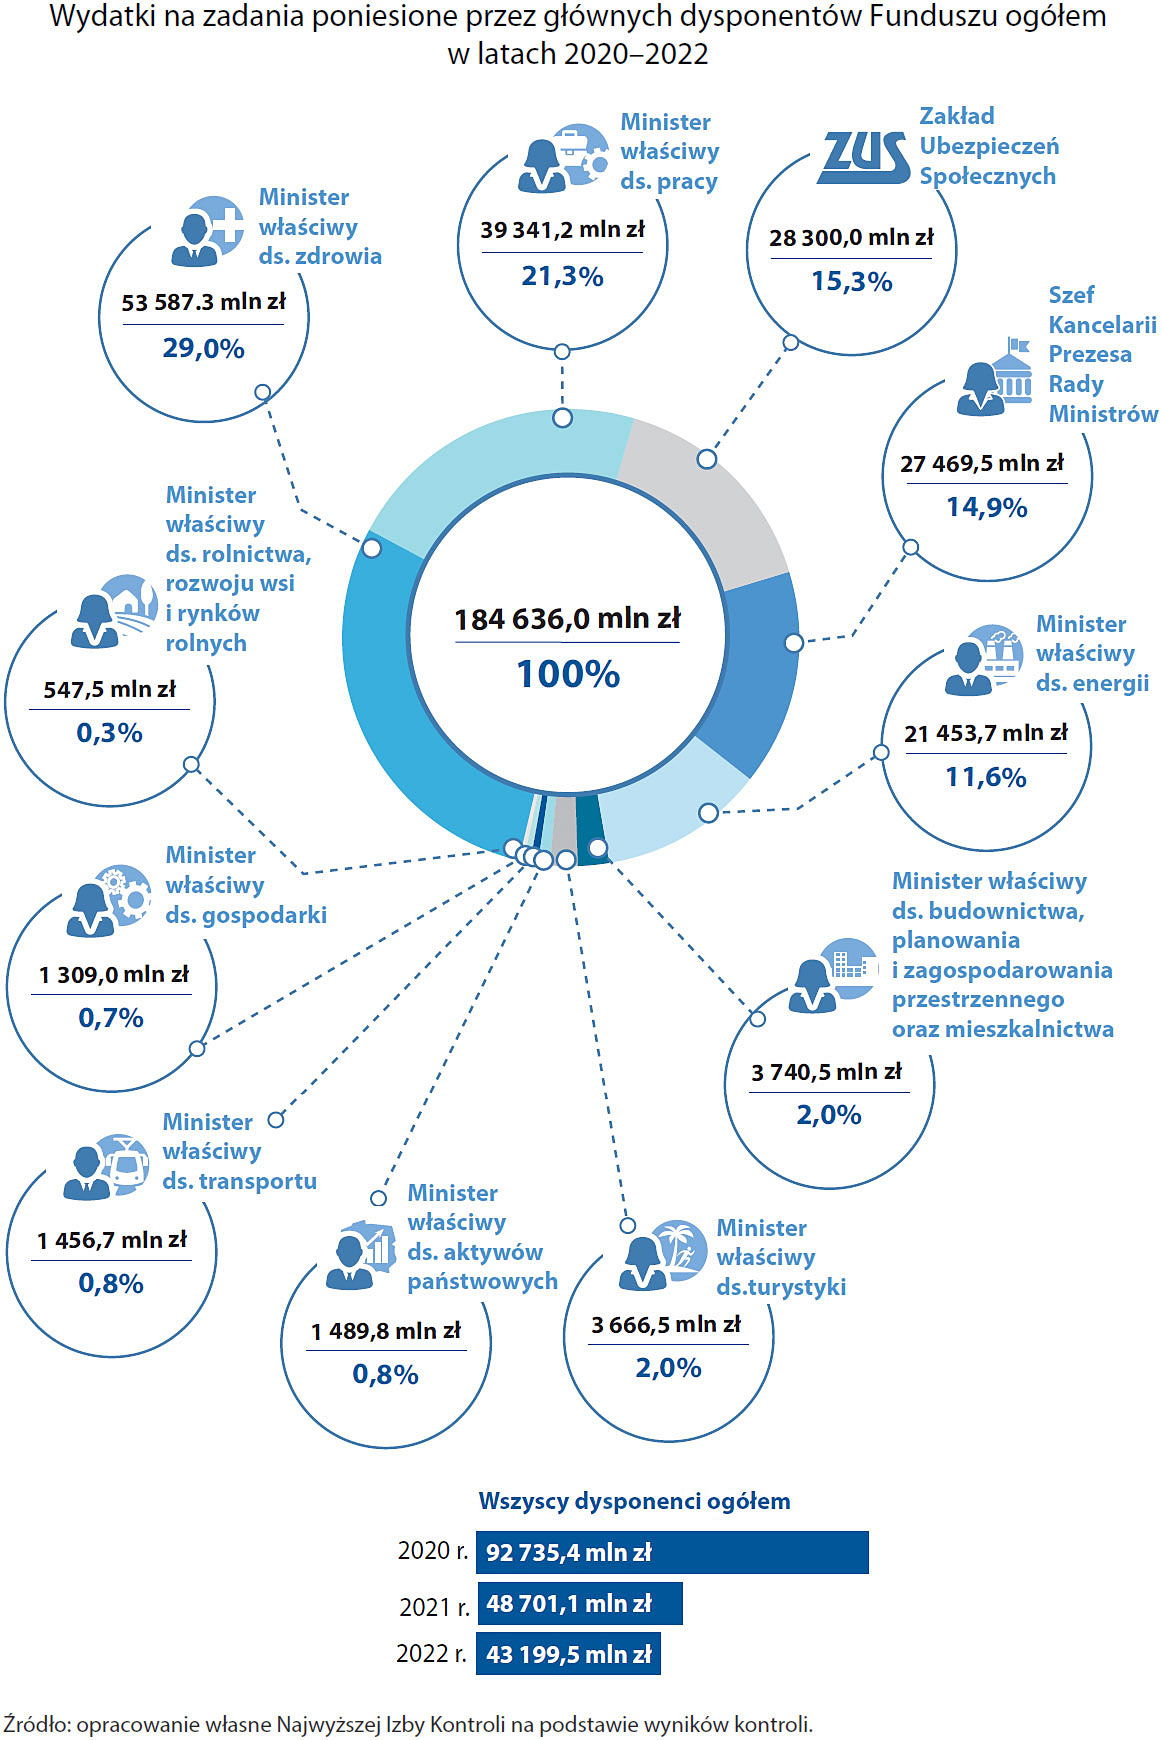 Wydatki głównych dysponentów Funduszu w latach 2020-2022 (opis grafiki poniżej)